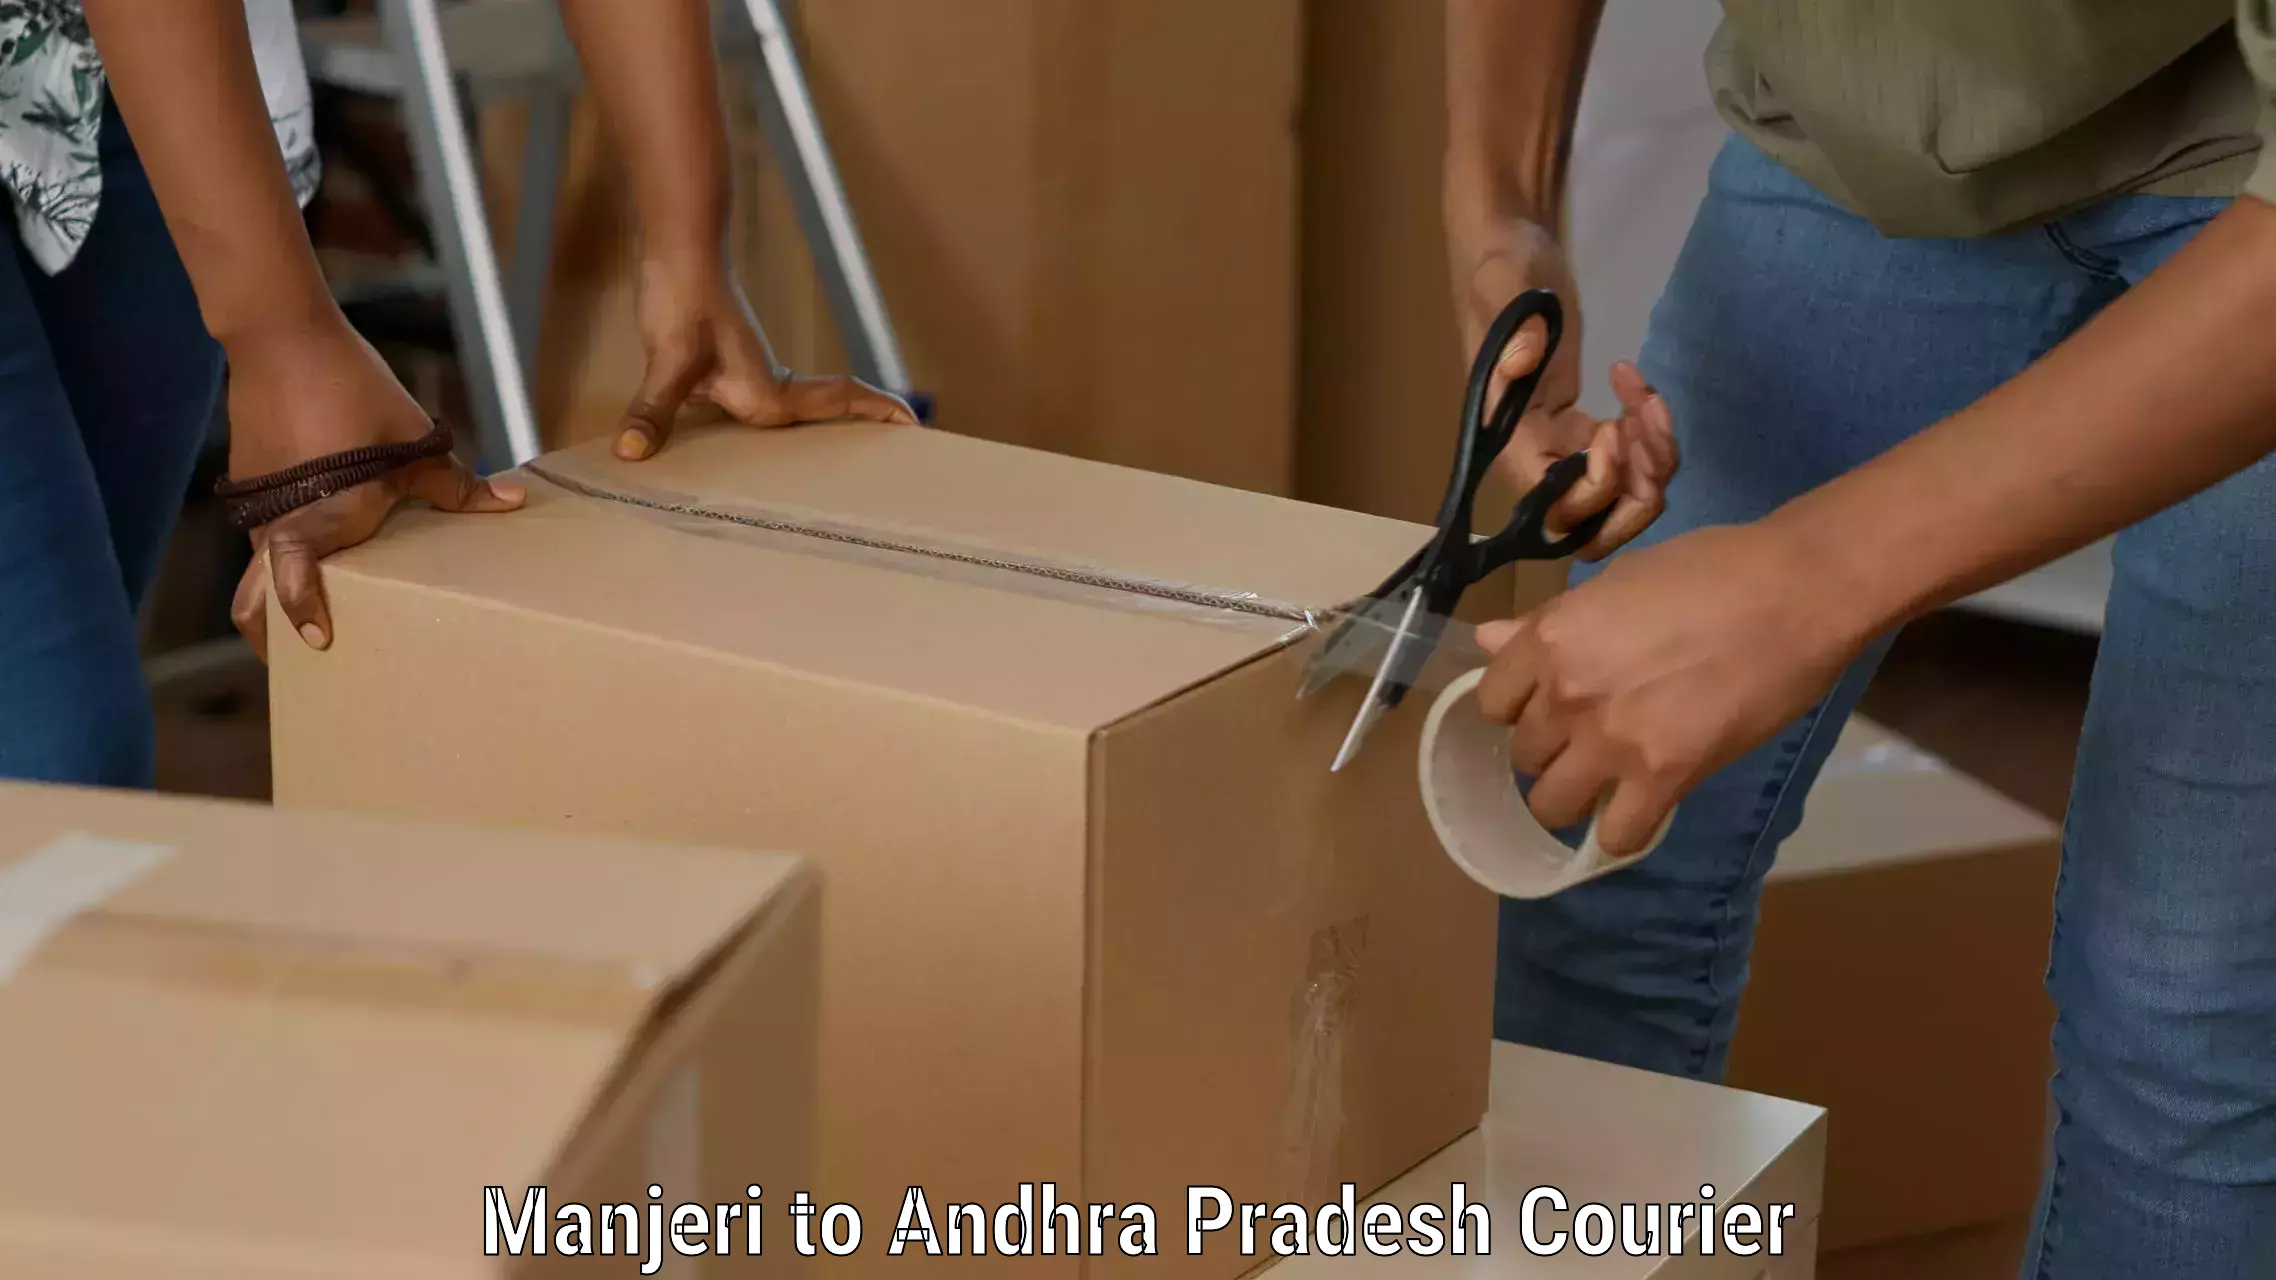 Professional courier handling Manjeri to Udayagiri